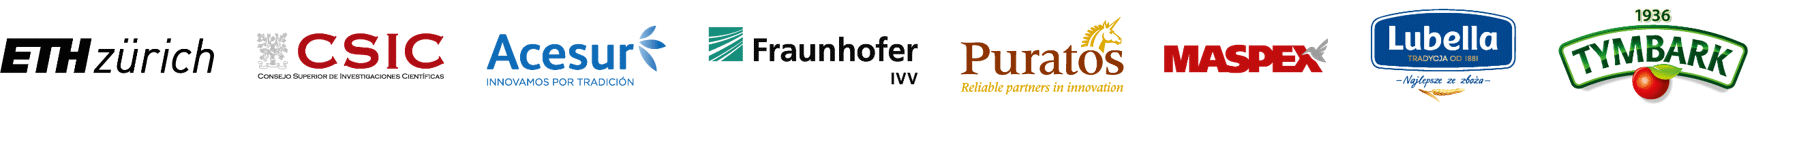 Logos: ETH Zurich, CSIC, Acesur, Frauenhofer, Puratos, Maspex, Lubella, Tymbark